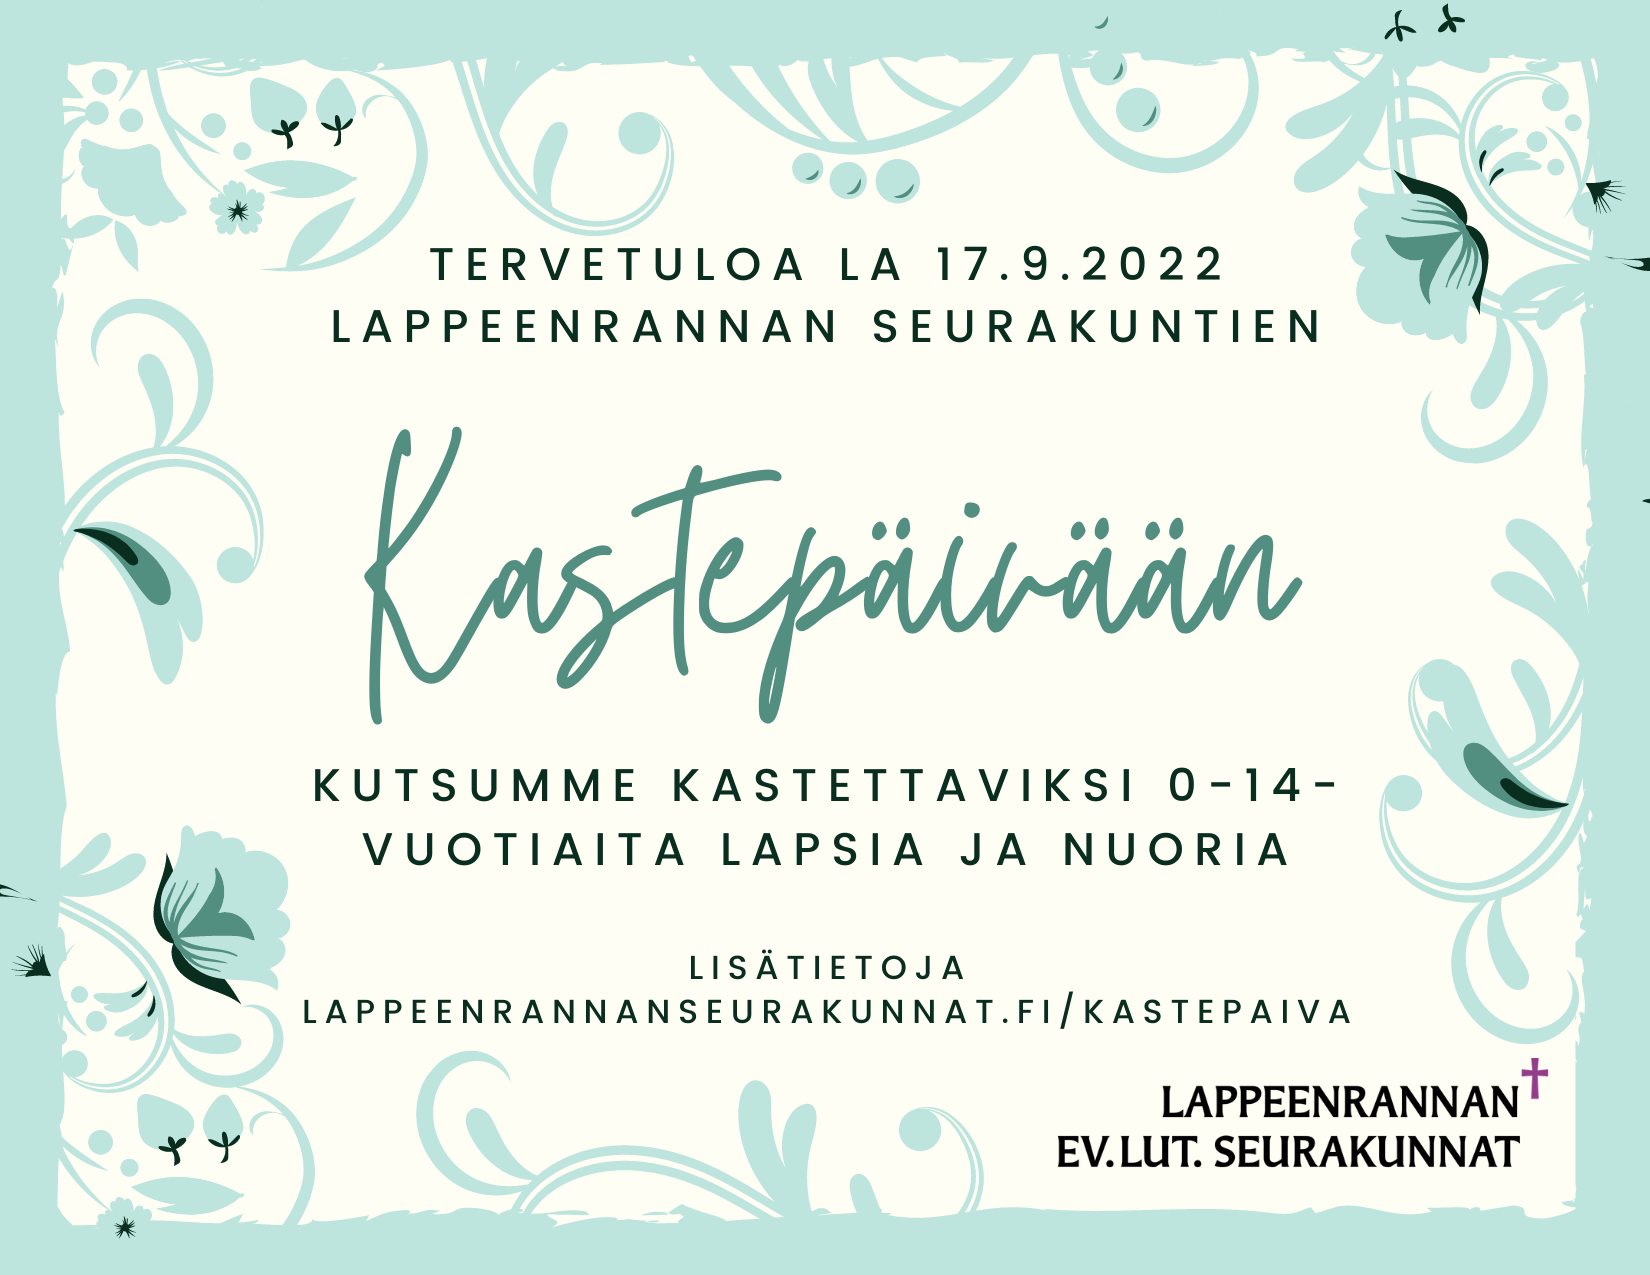 Vihreissä kukkakehyksissä teksti: Tervetuloa la 17.9.2022 Lappeenrannan seurakuntien Kastepäivään.